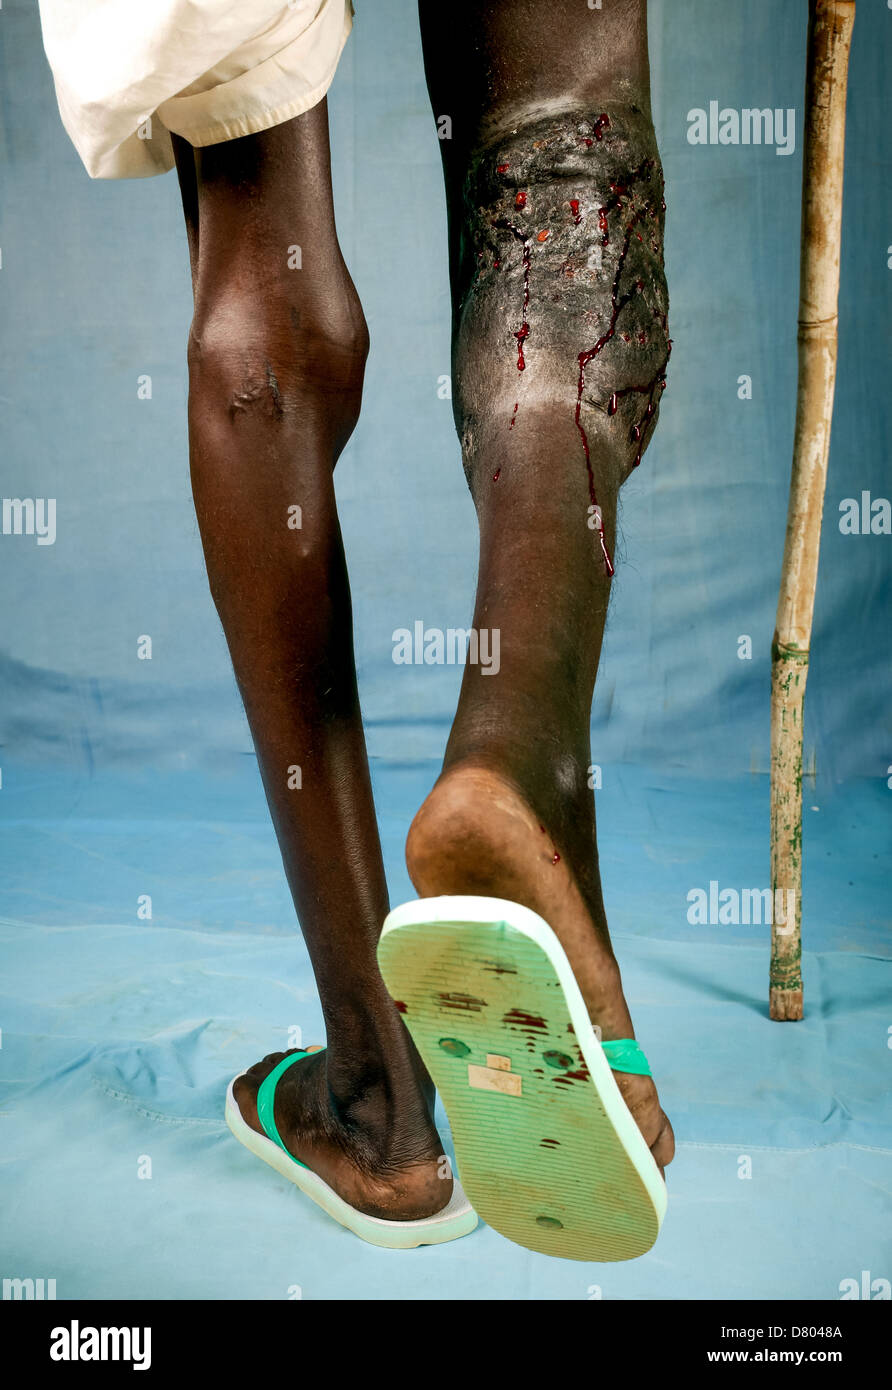 Trasudamento di sangue dai seni di 27 anni del maschio della gamba con eumycetoma sotto il ginocchio destro. Foto Stock